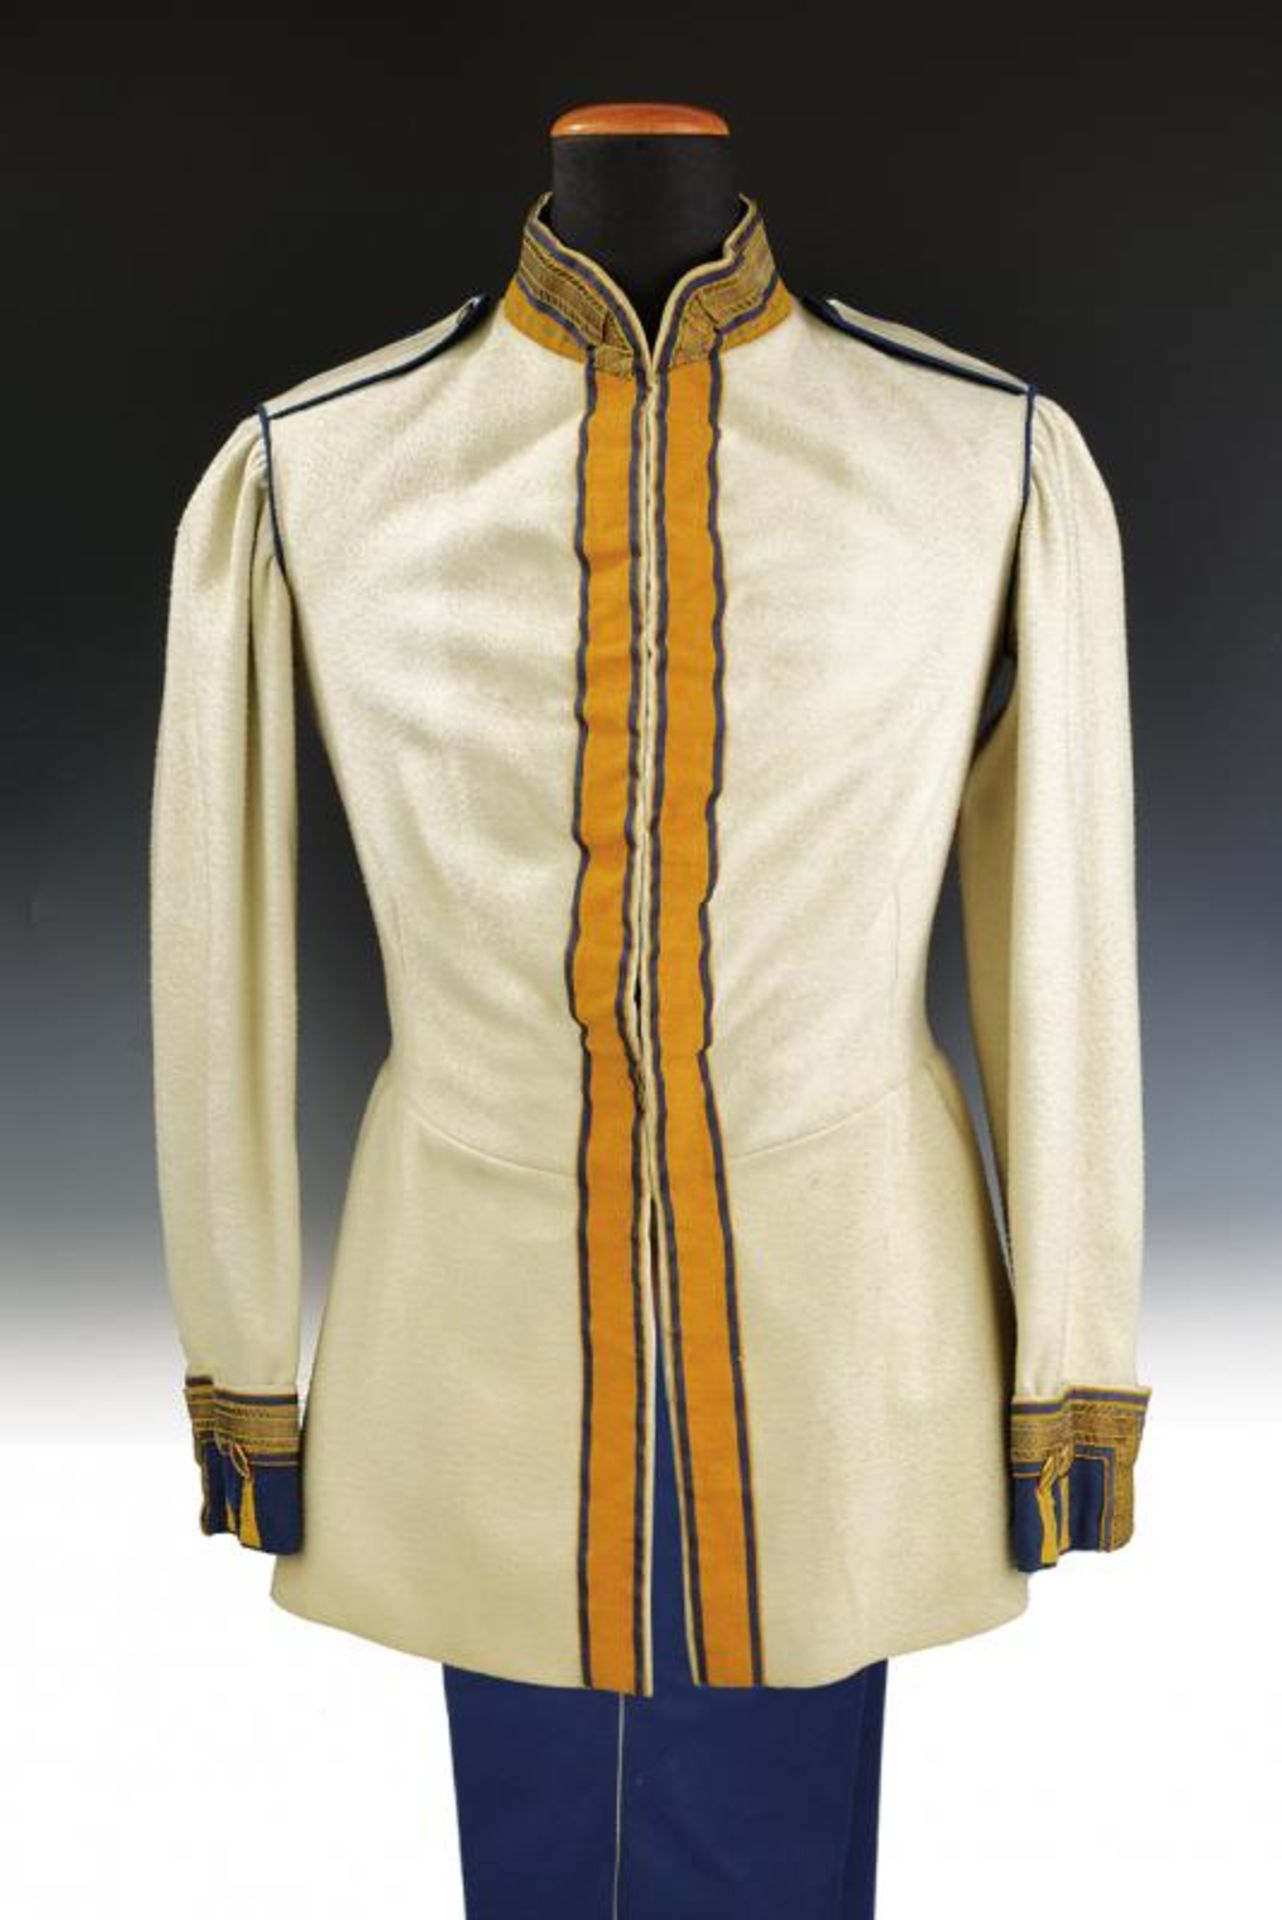 A cuirassier NC-officer's uniform